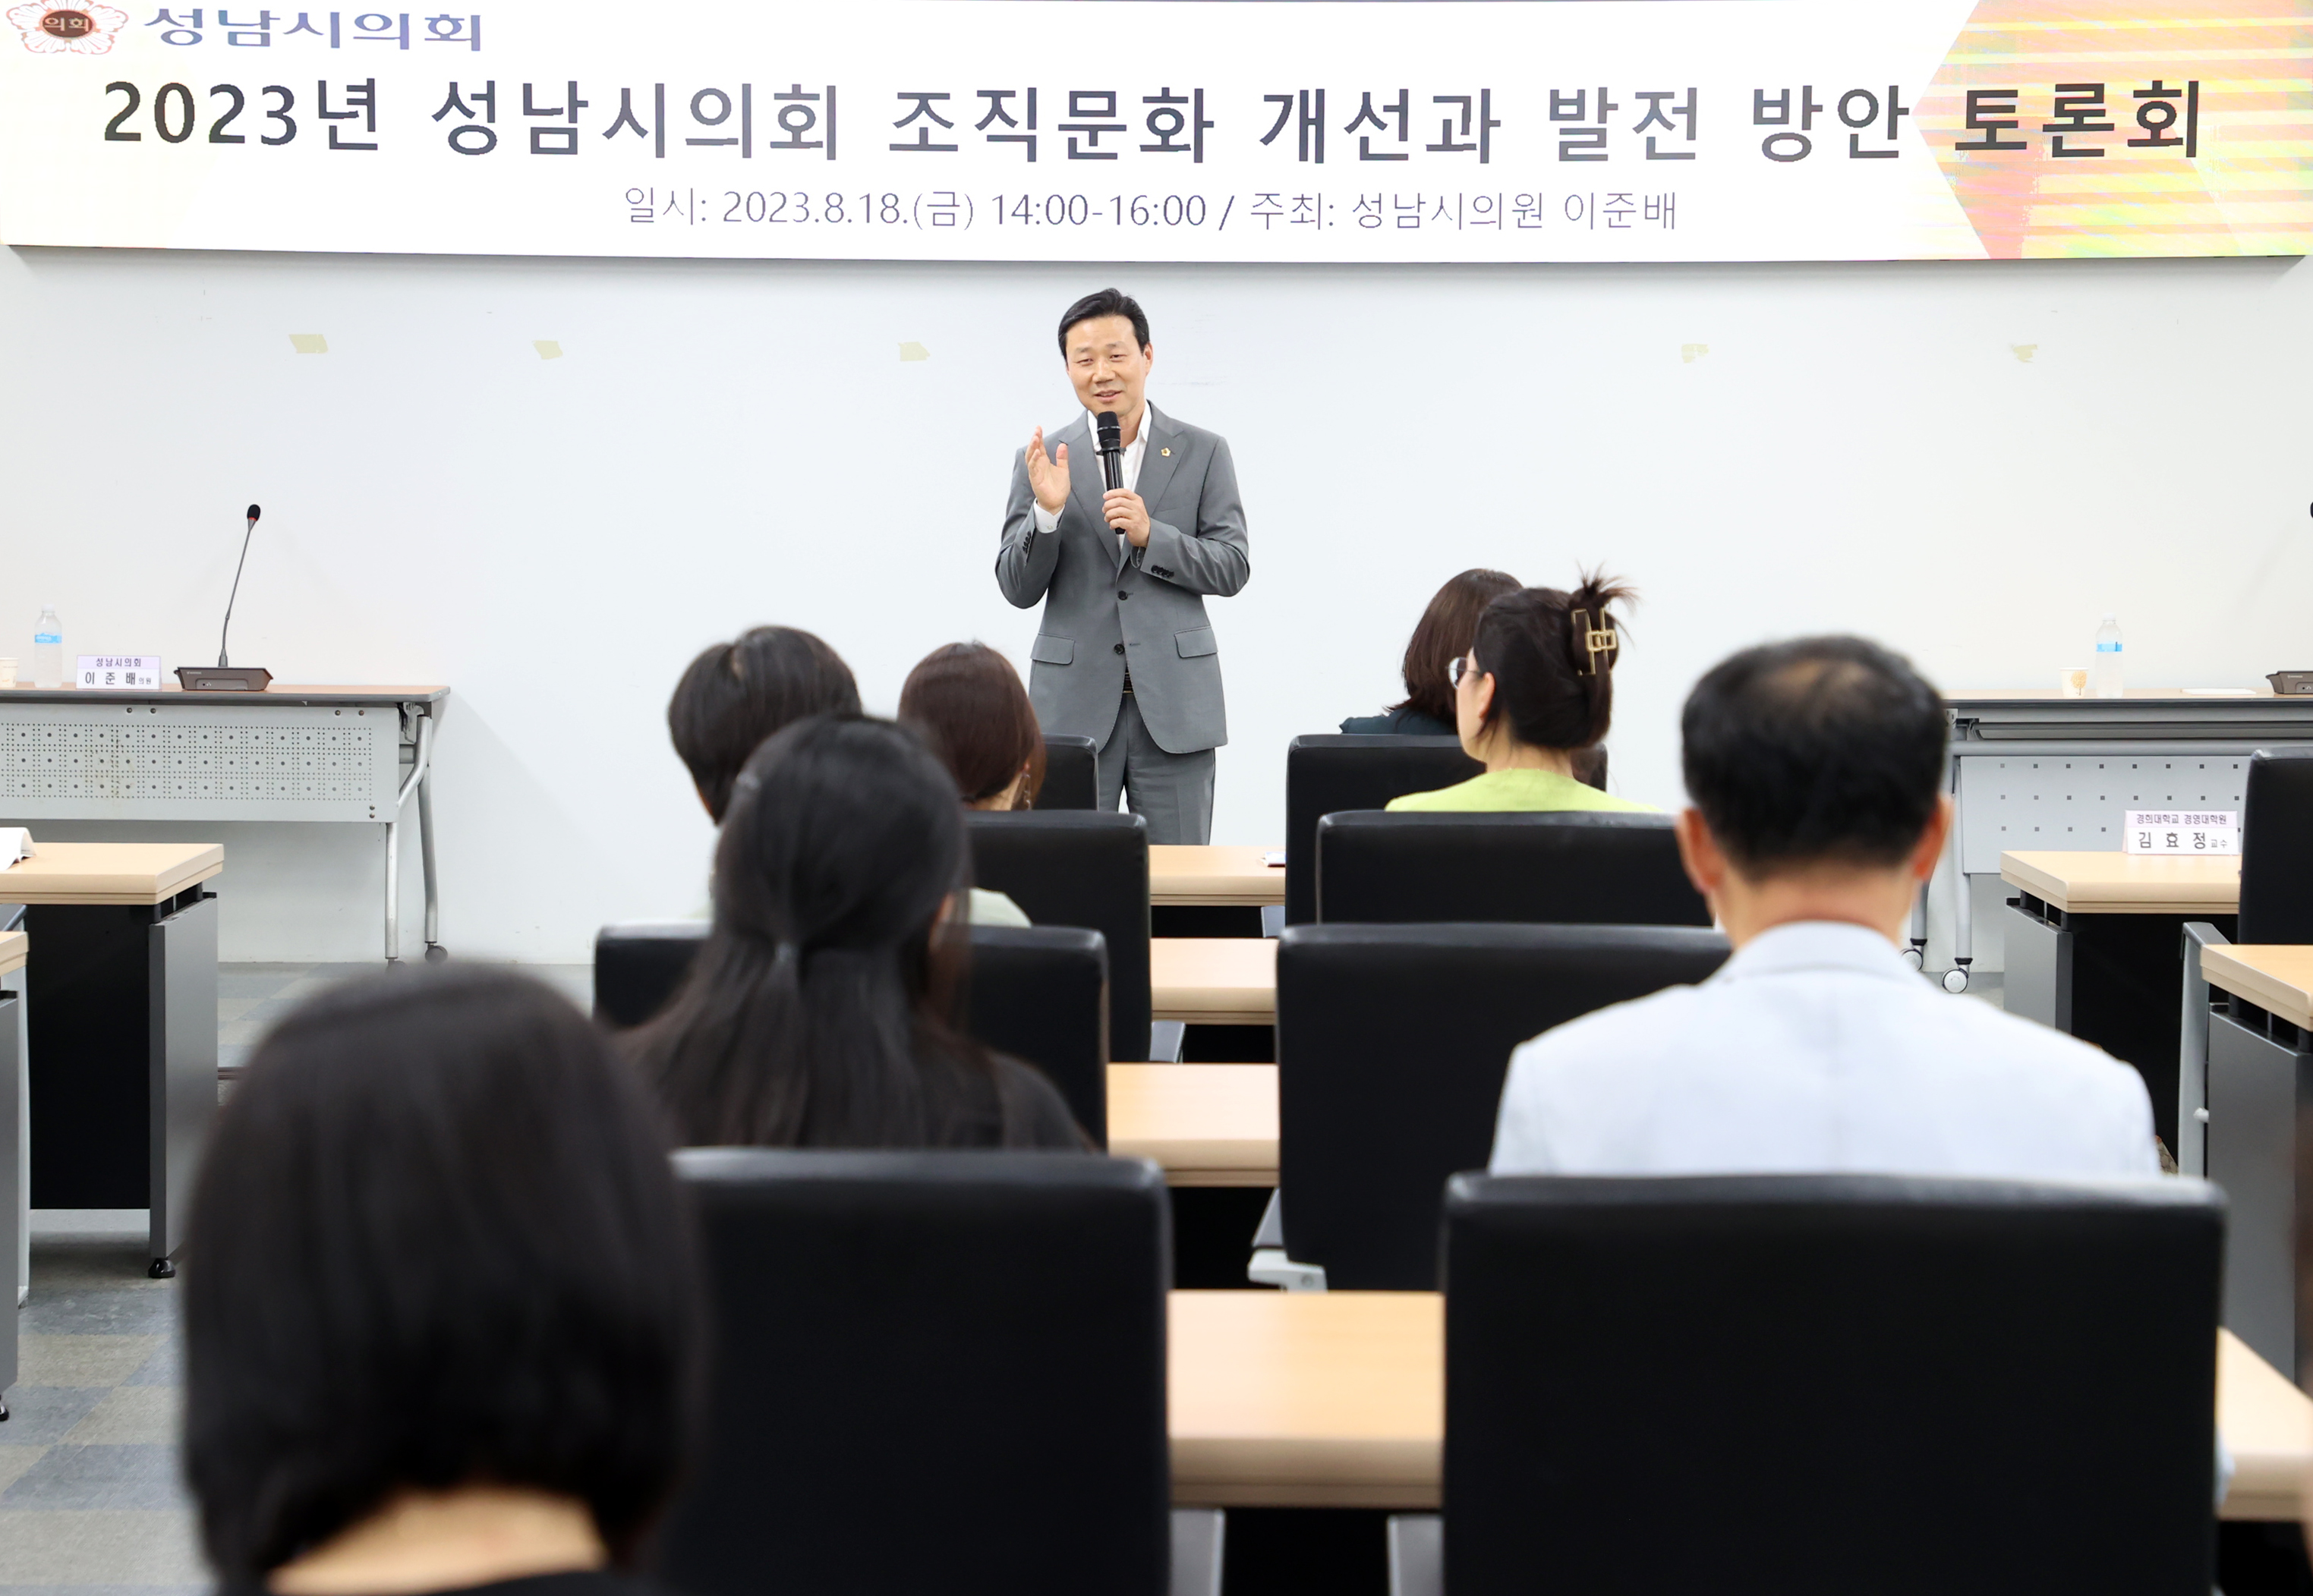 2023년 성남시의회 조직문화 개선과 발전 방안 토론회 - 2